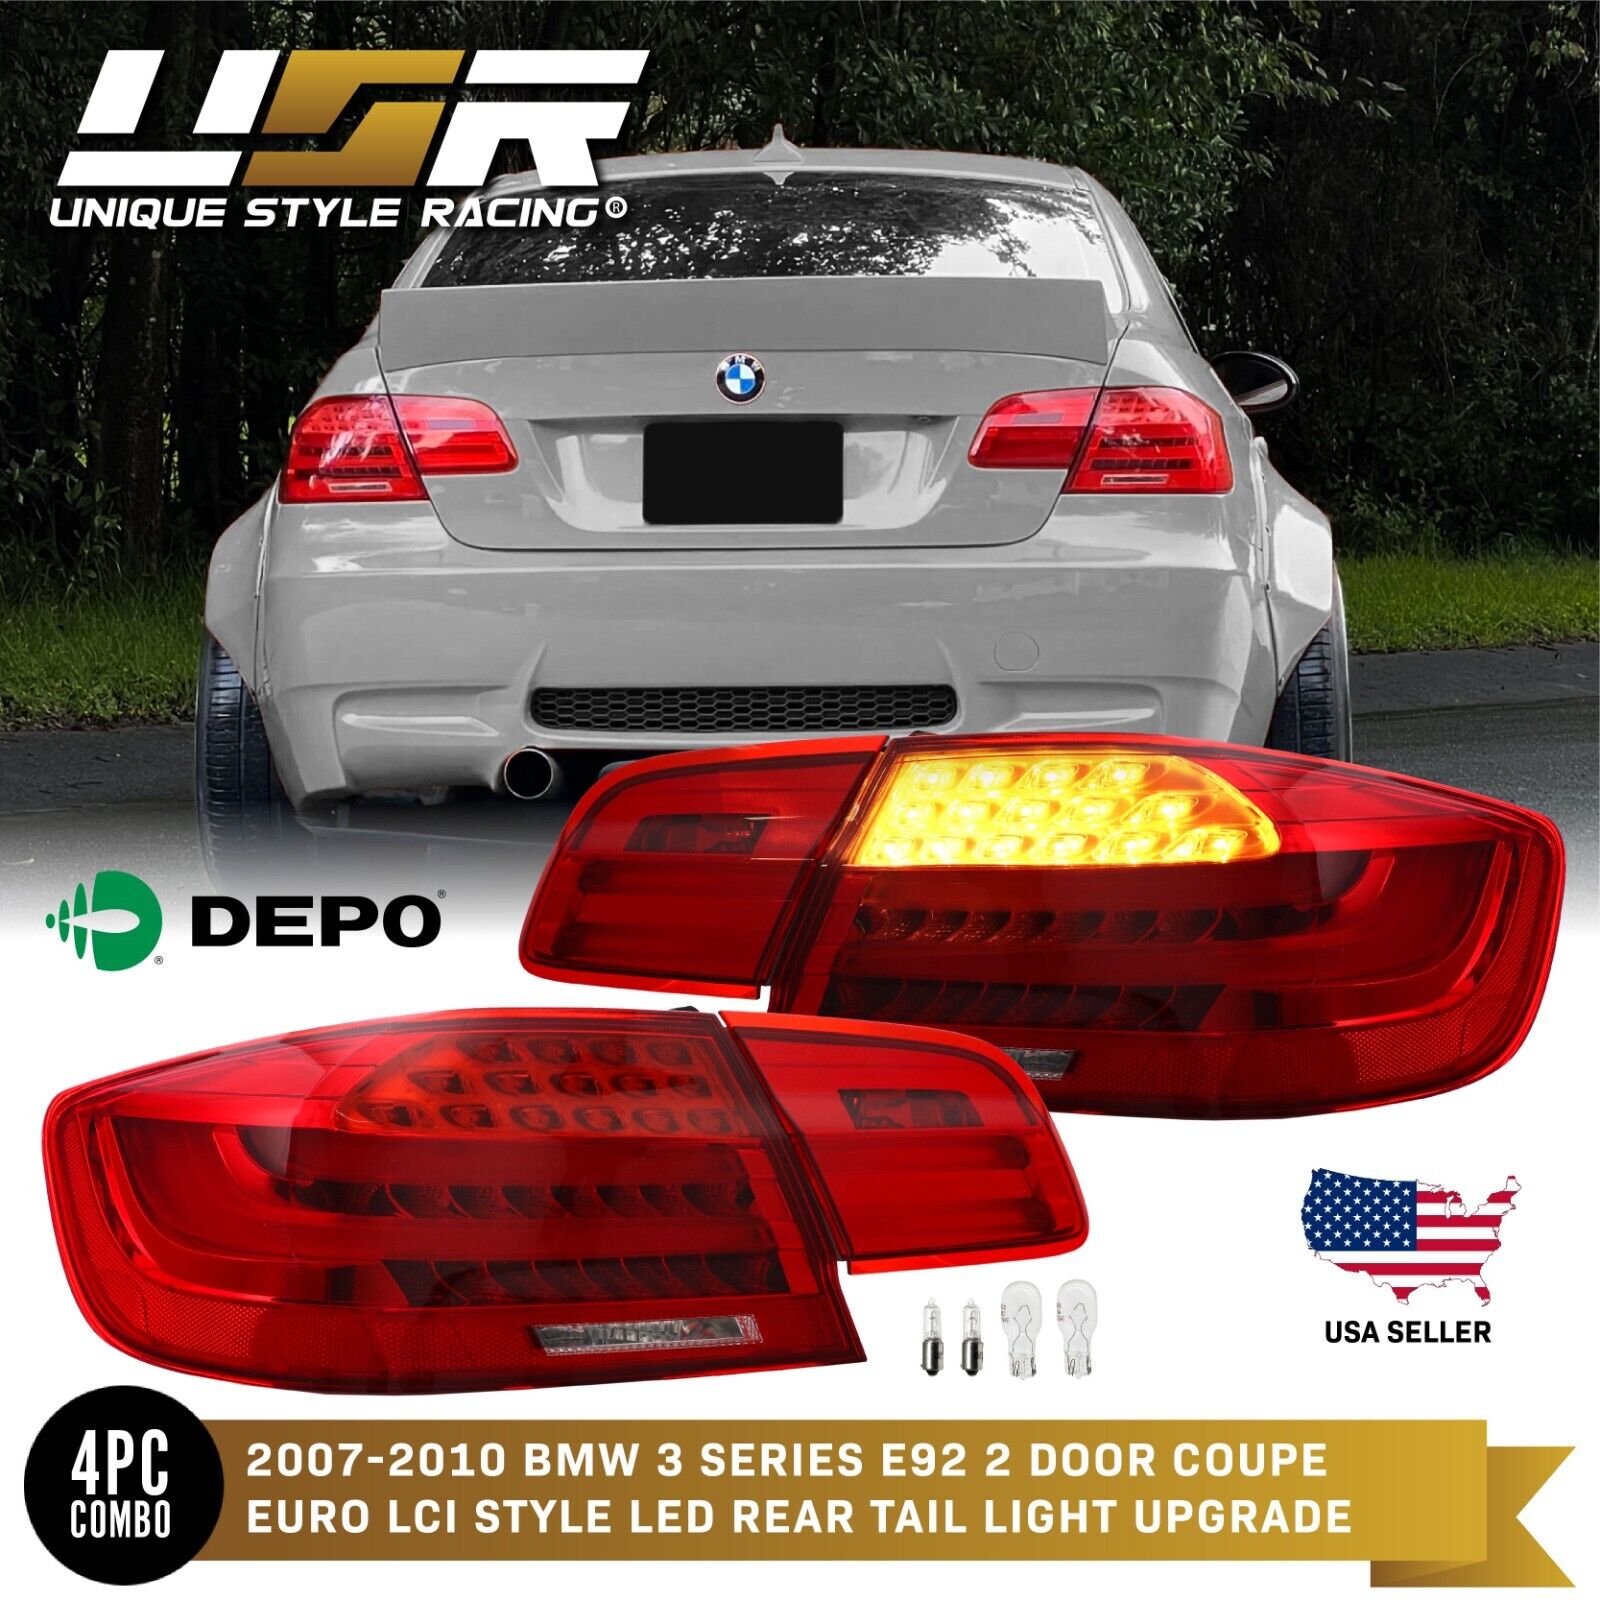 DEPO LCI M3 Amber LED Signal Rear 4PCS Tail Light For 2007-2010 BMW E92 2D Coupe